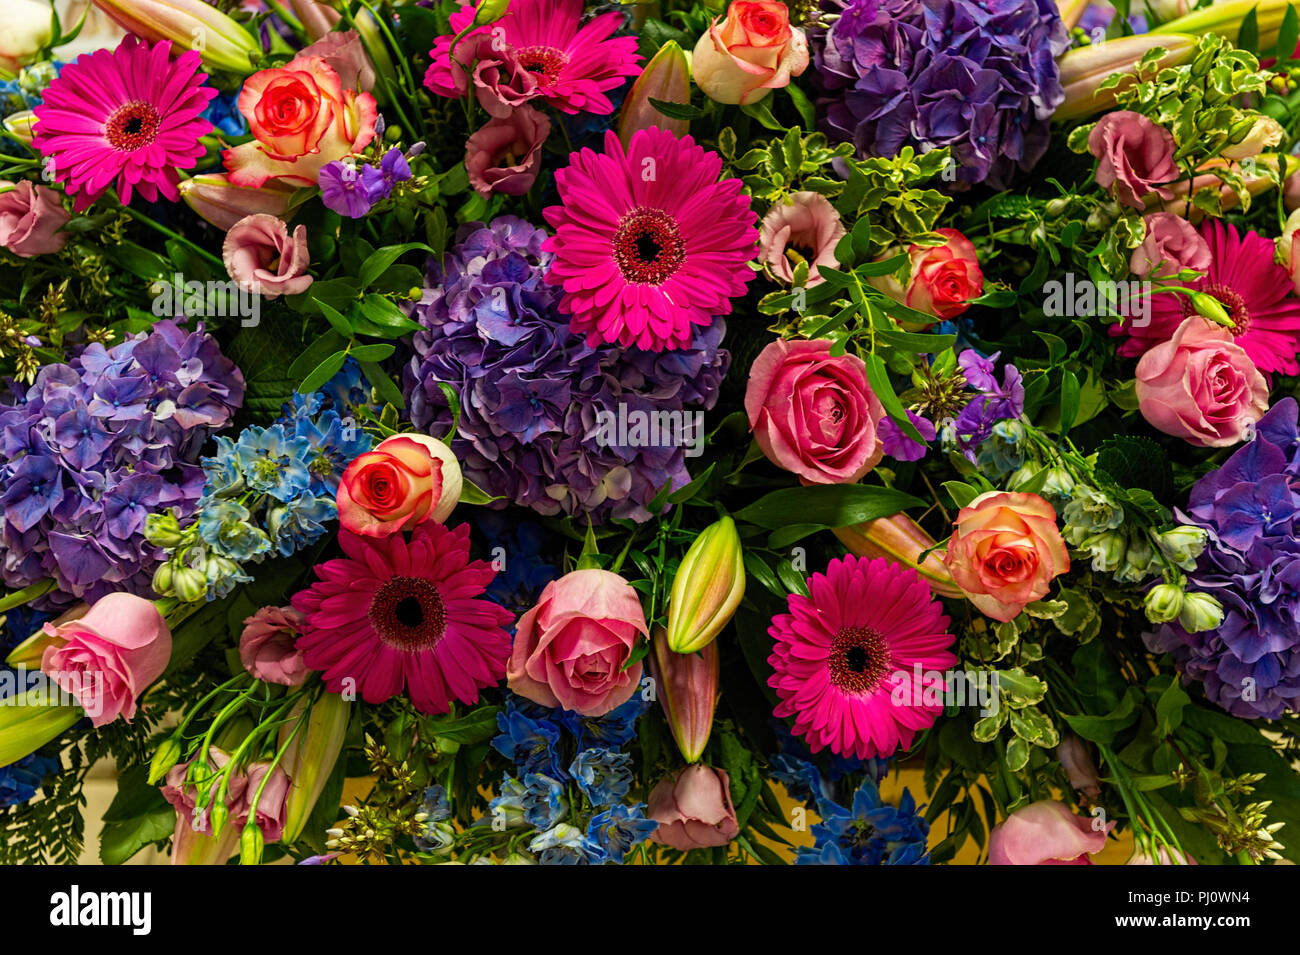 Large floral arrangement Stock Photo